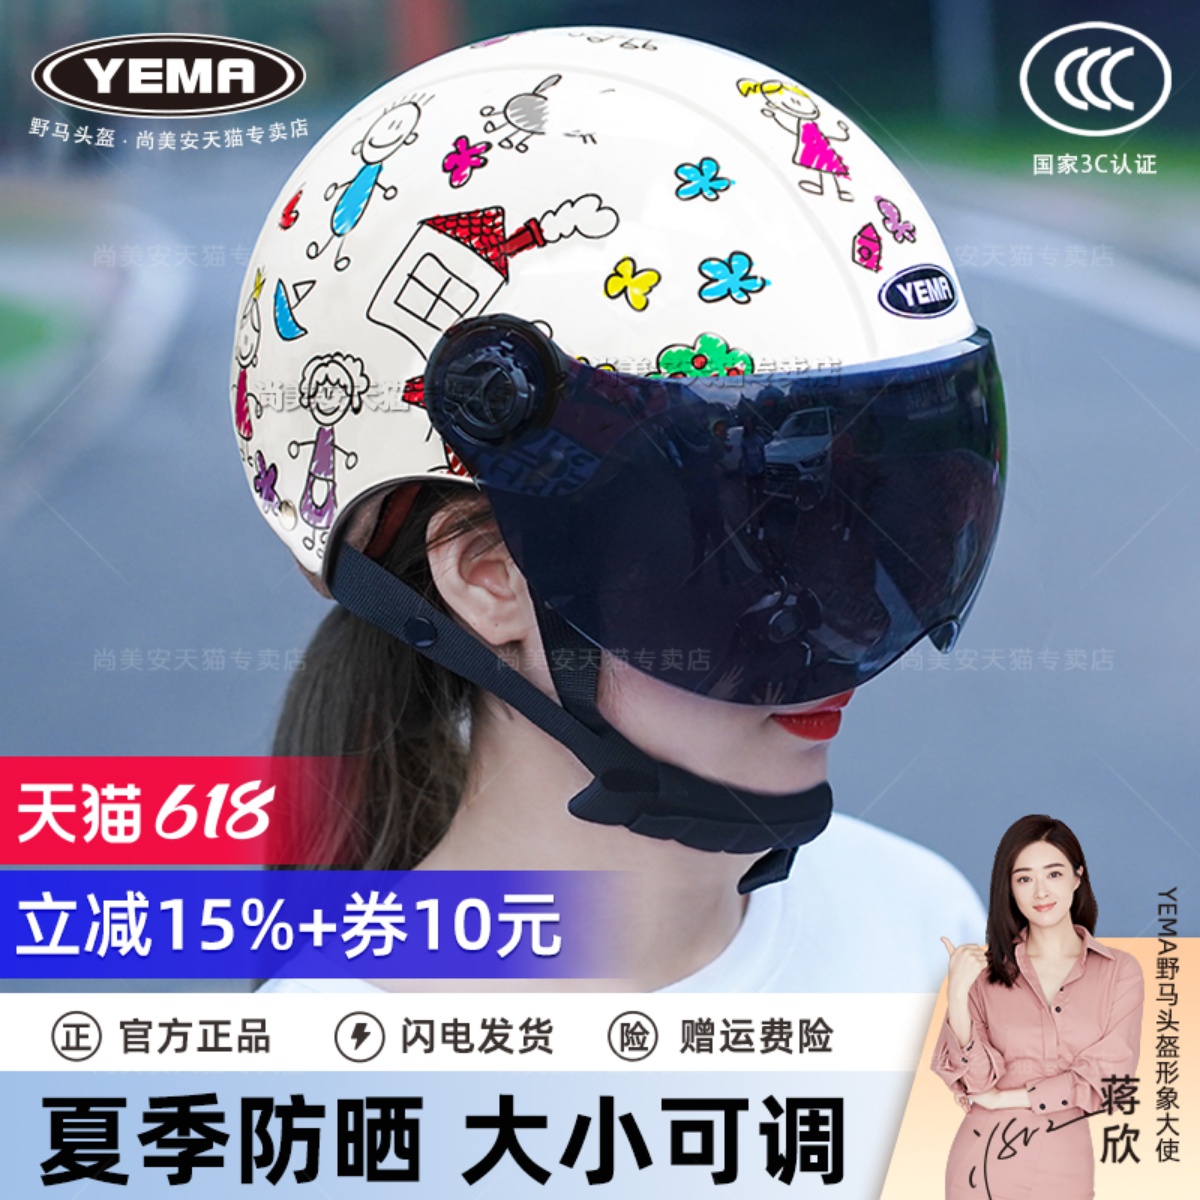 3C认证野马头盔电动摩托车男女夏季天防晒透气轻便电瓶国标安全帽